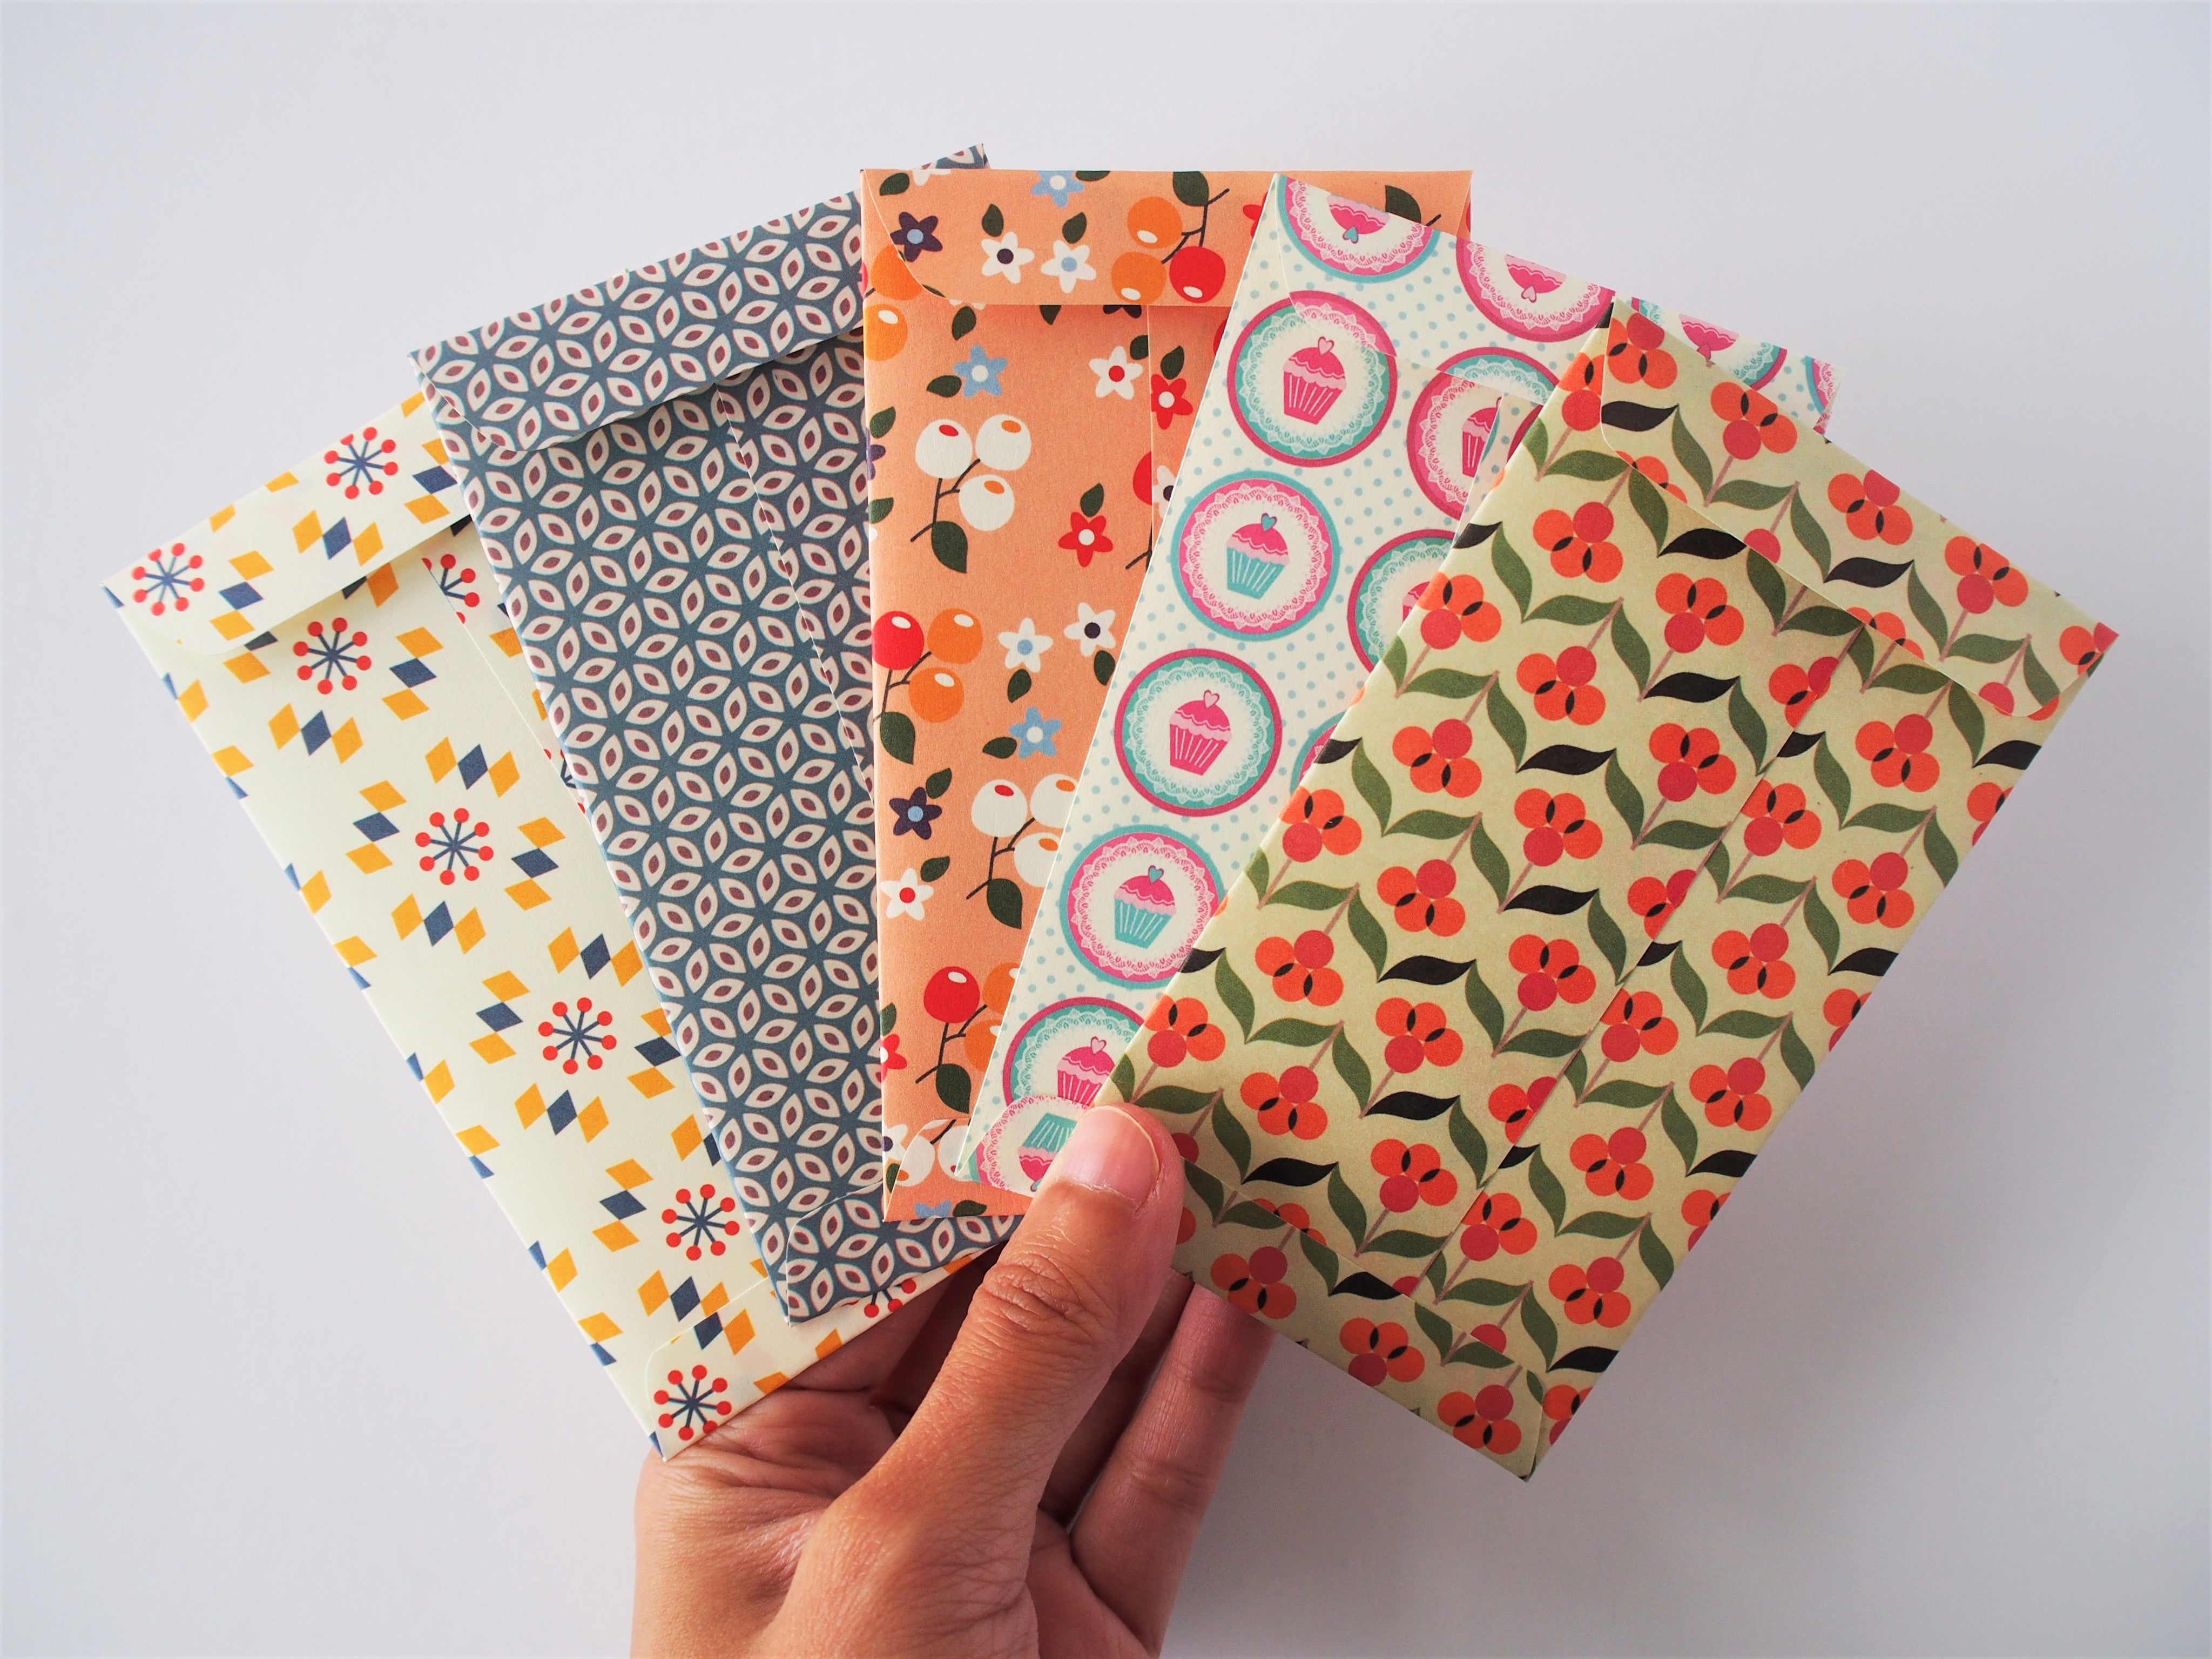 Cash Envelopes – Luxe Designs